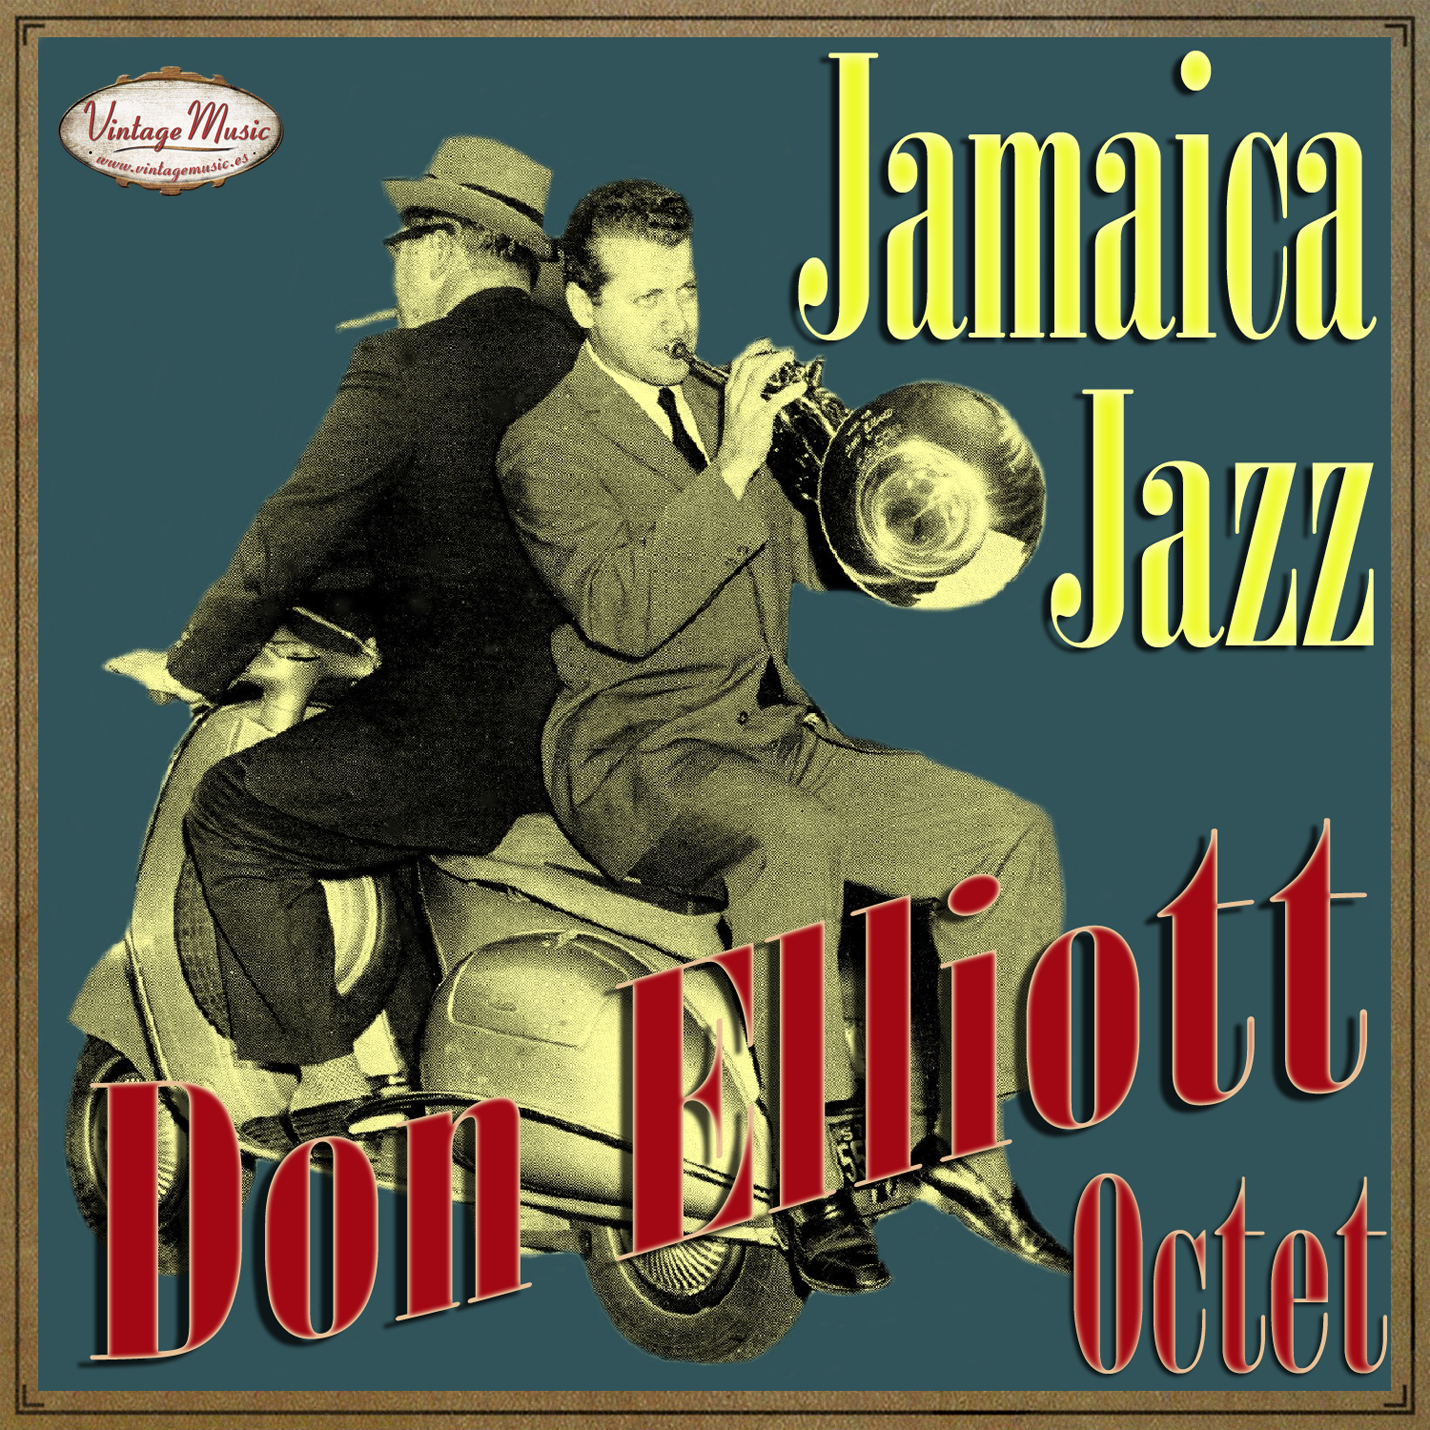 Don Elliot (Colección Vintage Music)